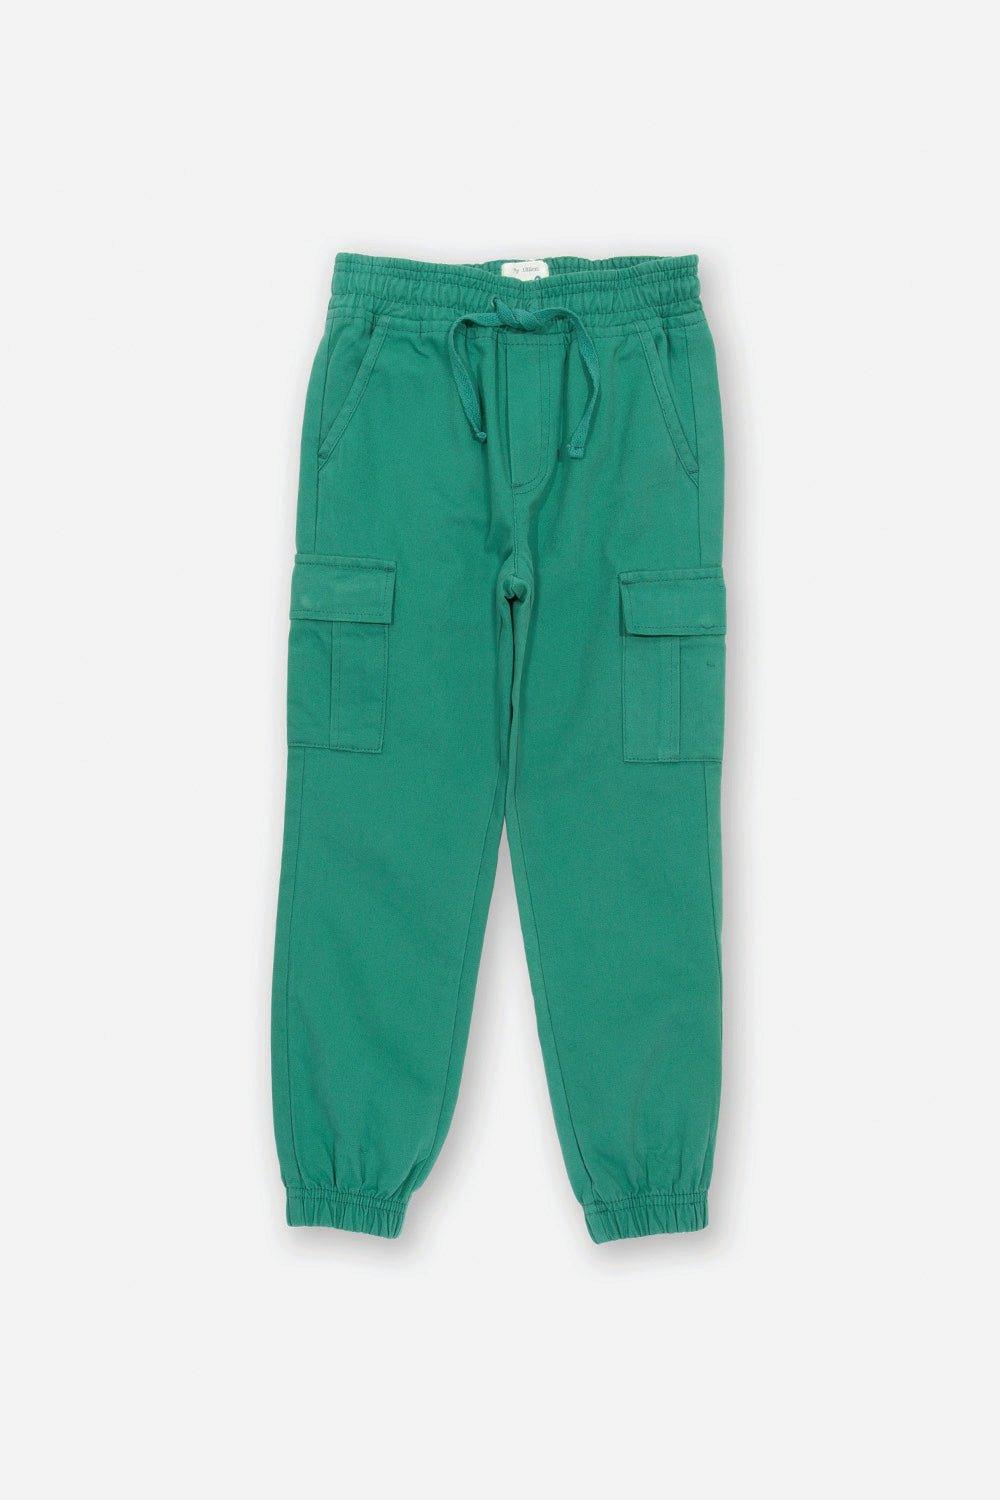 Утилиты Kite, зеленый брюки с поясом цвета хаки gulliver